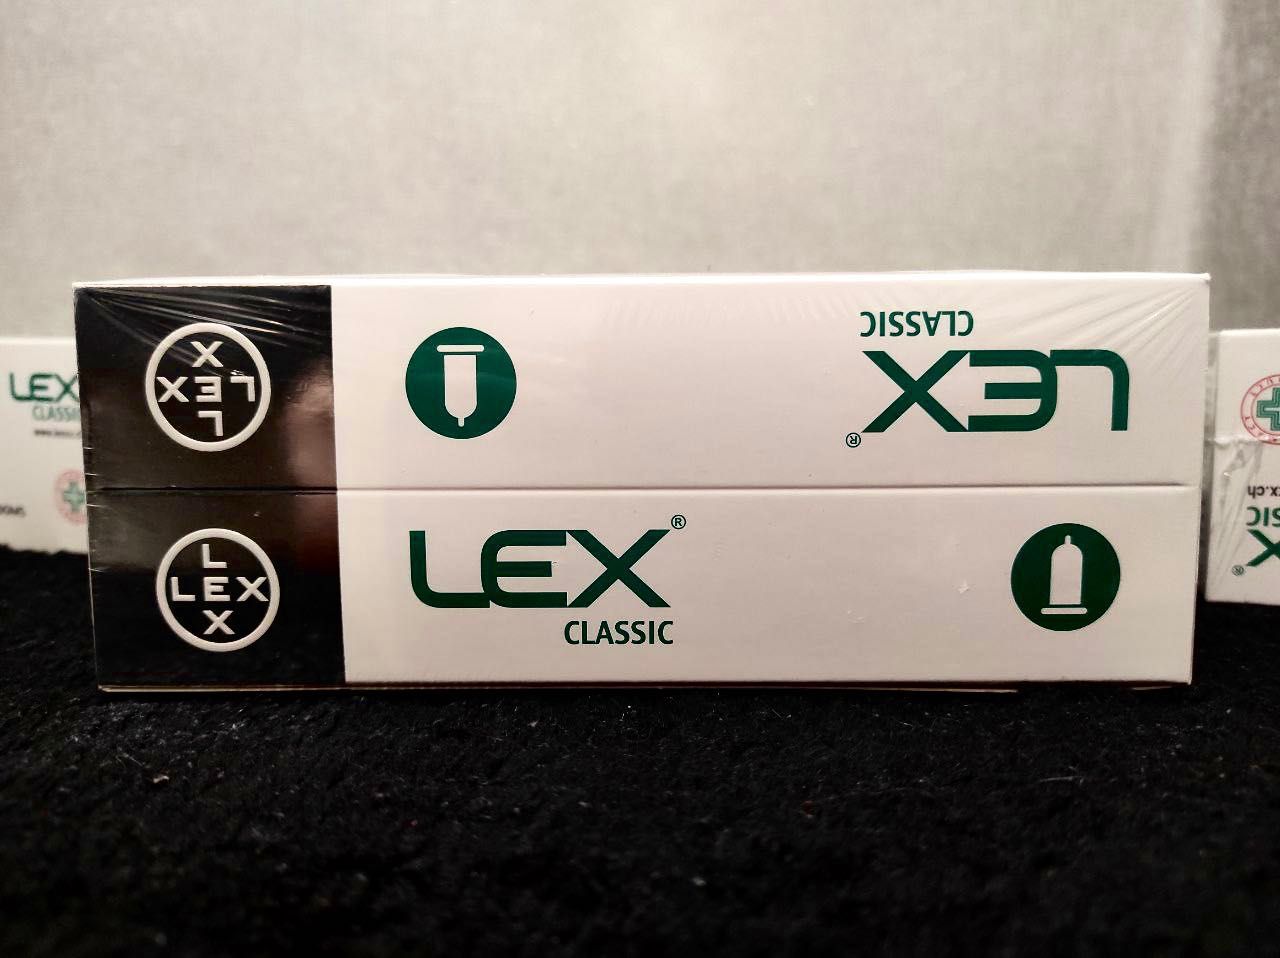 Швейцарський бренд презервативів lex 48 шт